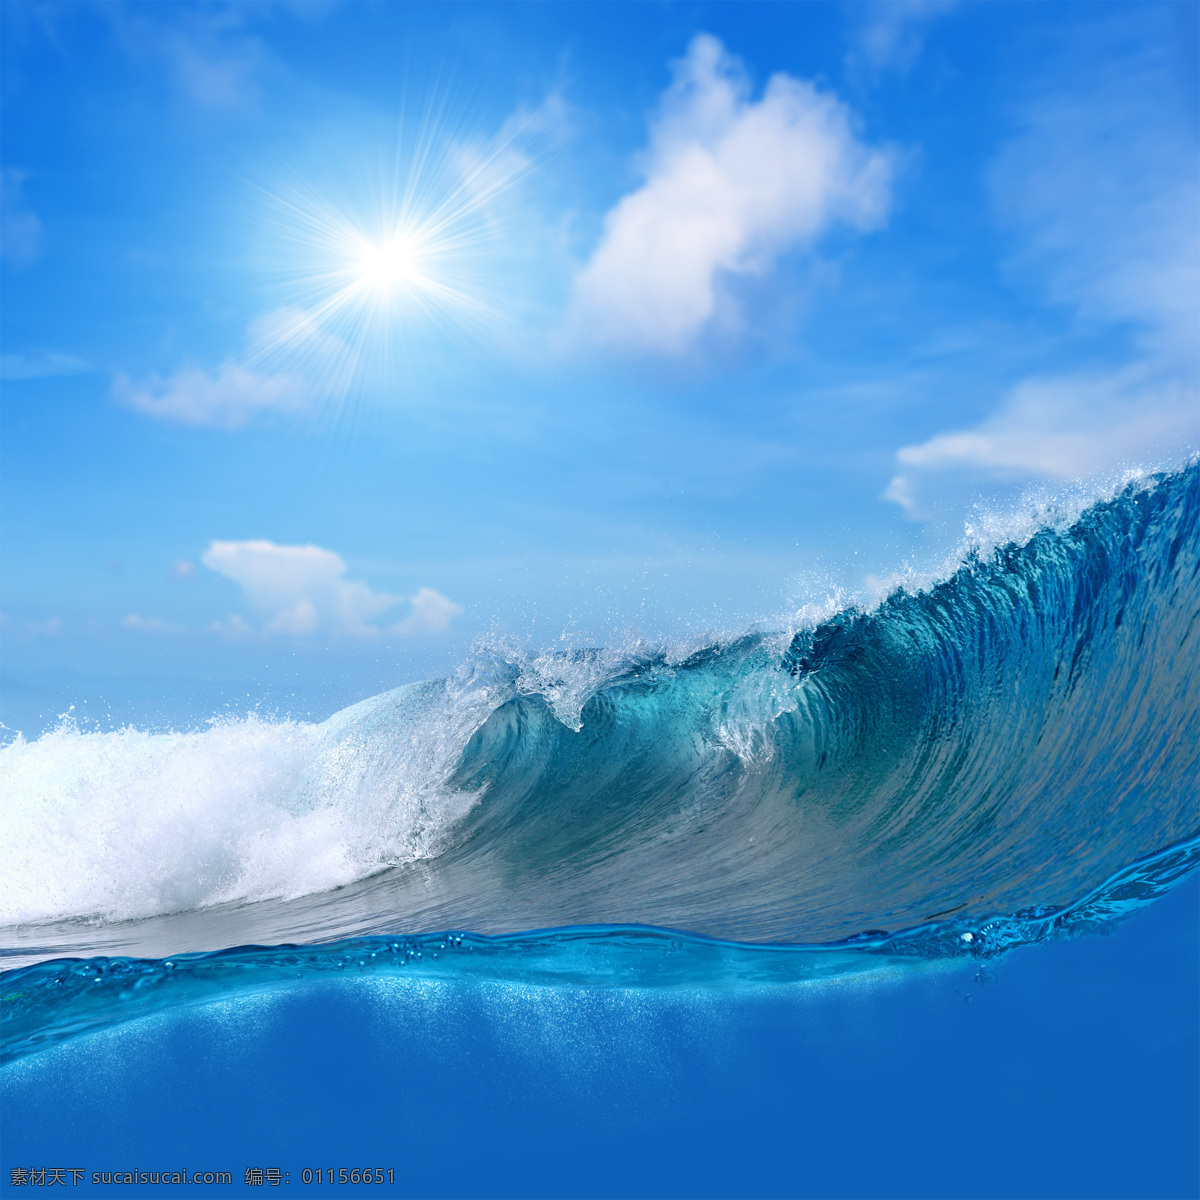 蓝天 白云 大海 风景 天空 大海风景 海洋风景 海浪 巨浪 海面风景 海水 海洋海边 自然景观 蓝色